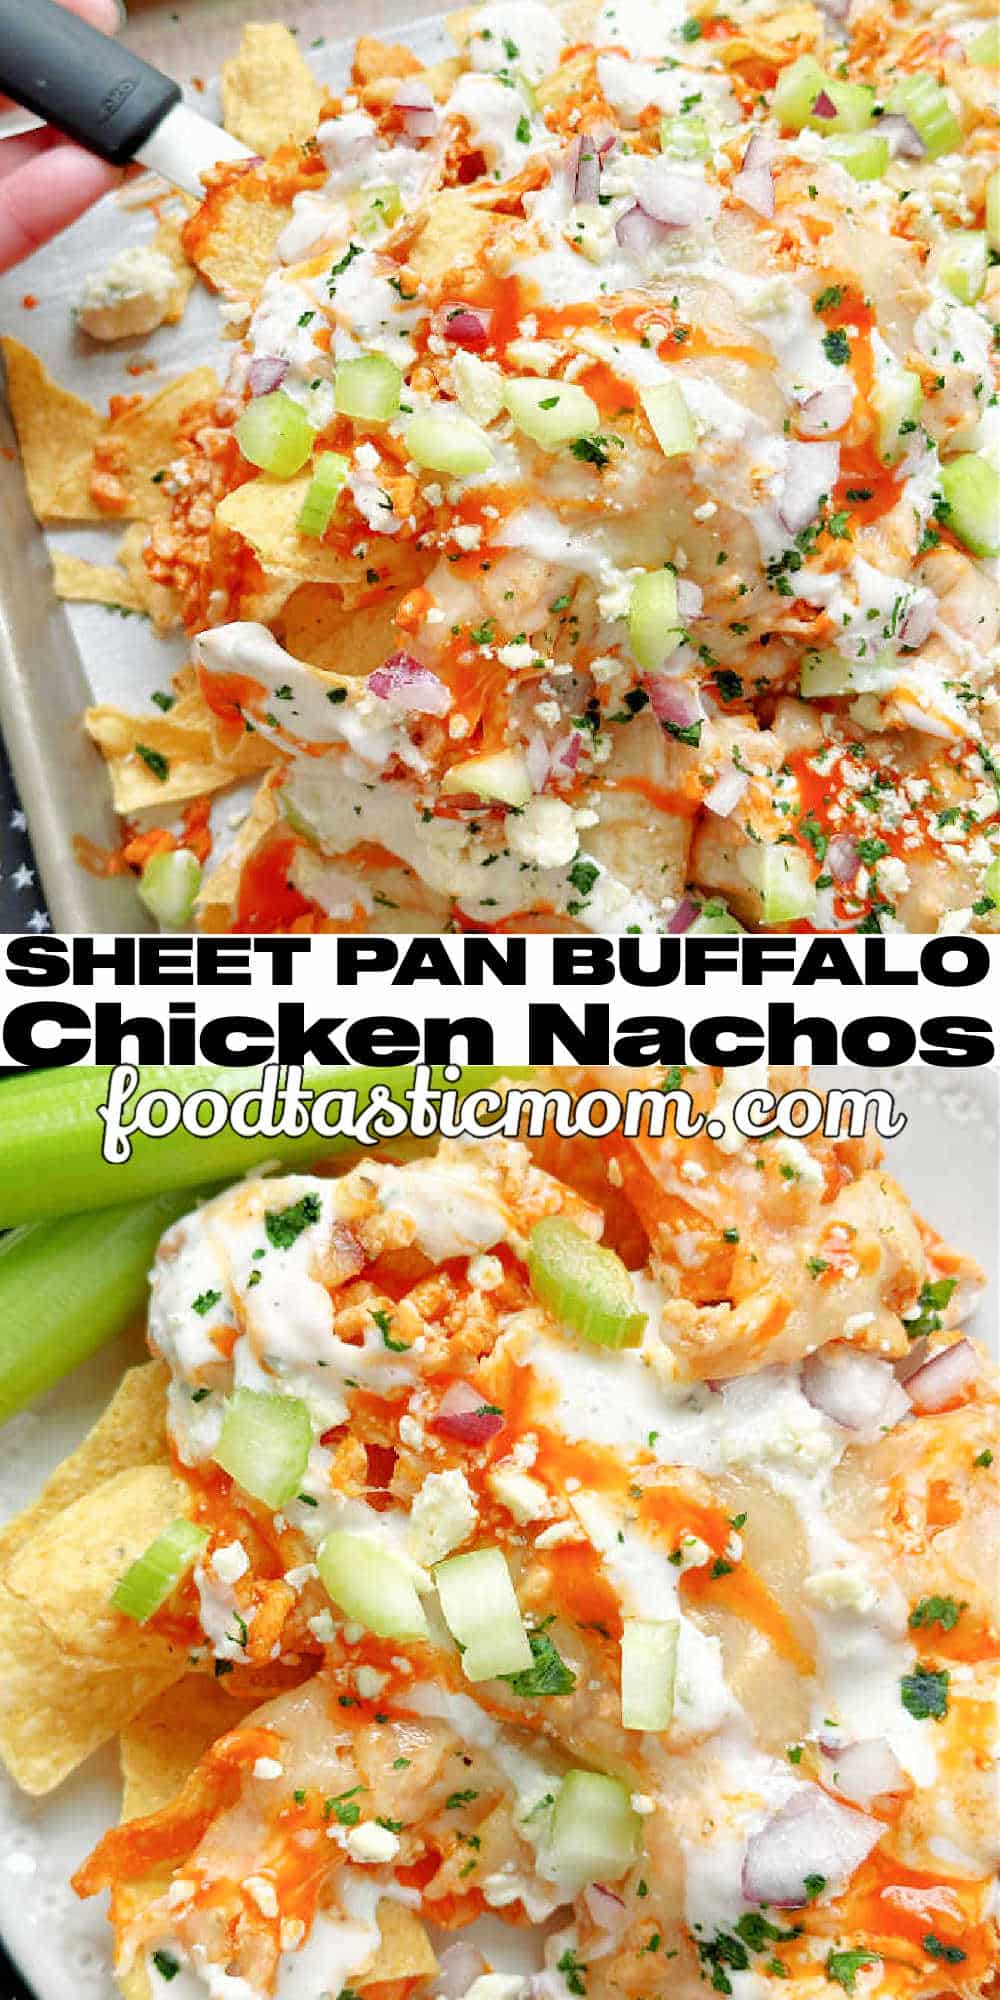 Buffalo Chicken Nachos | Foodtastic Mom #buffalochickennachos #sheetpannachos #buffalochicken via @foodtasticmom